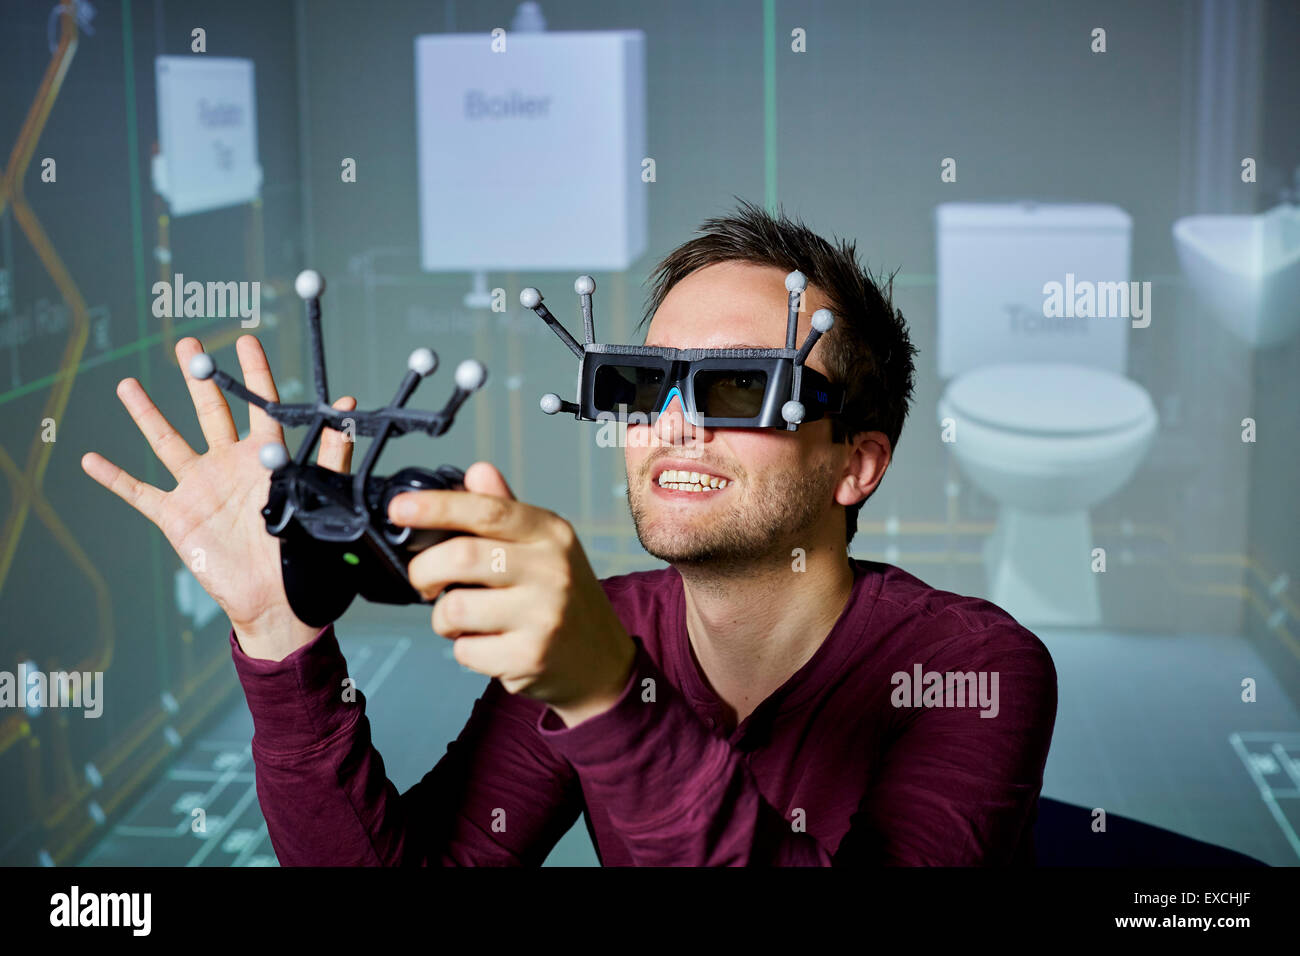 La realtà aumentata maschile gioca con gli occhiali e il ricevitore Foto Stock